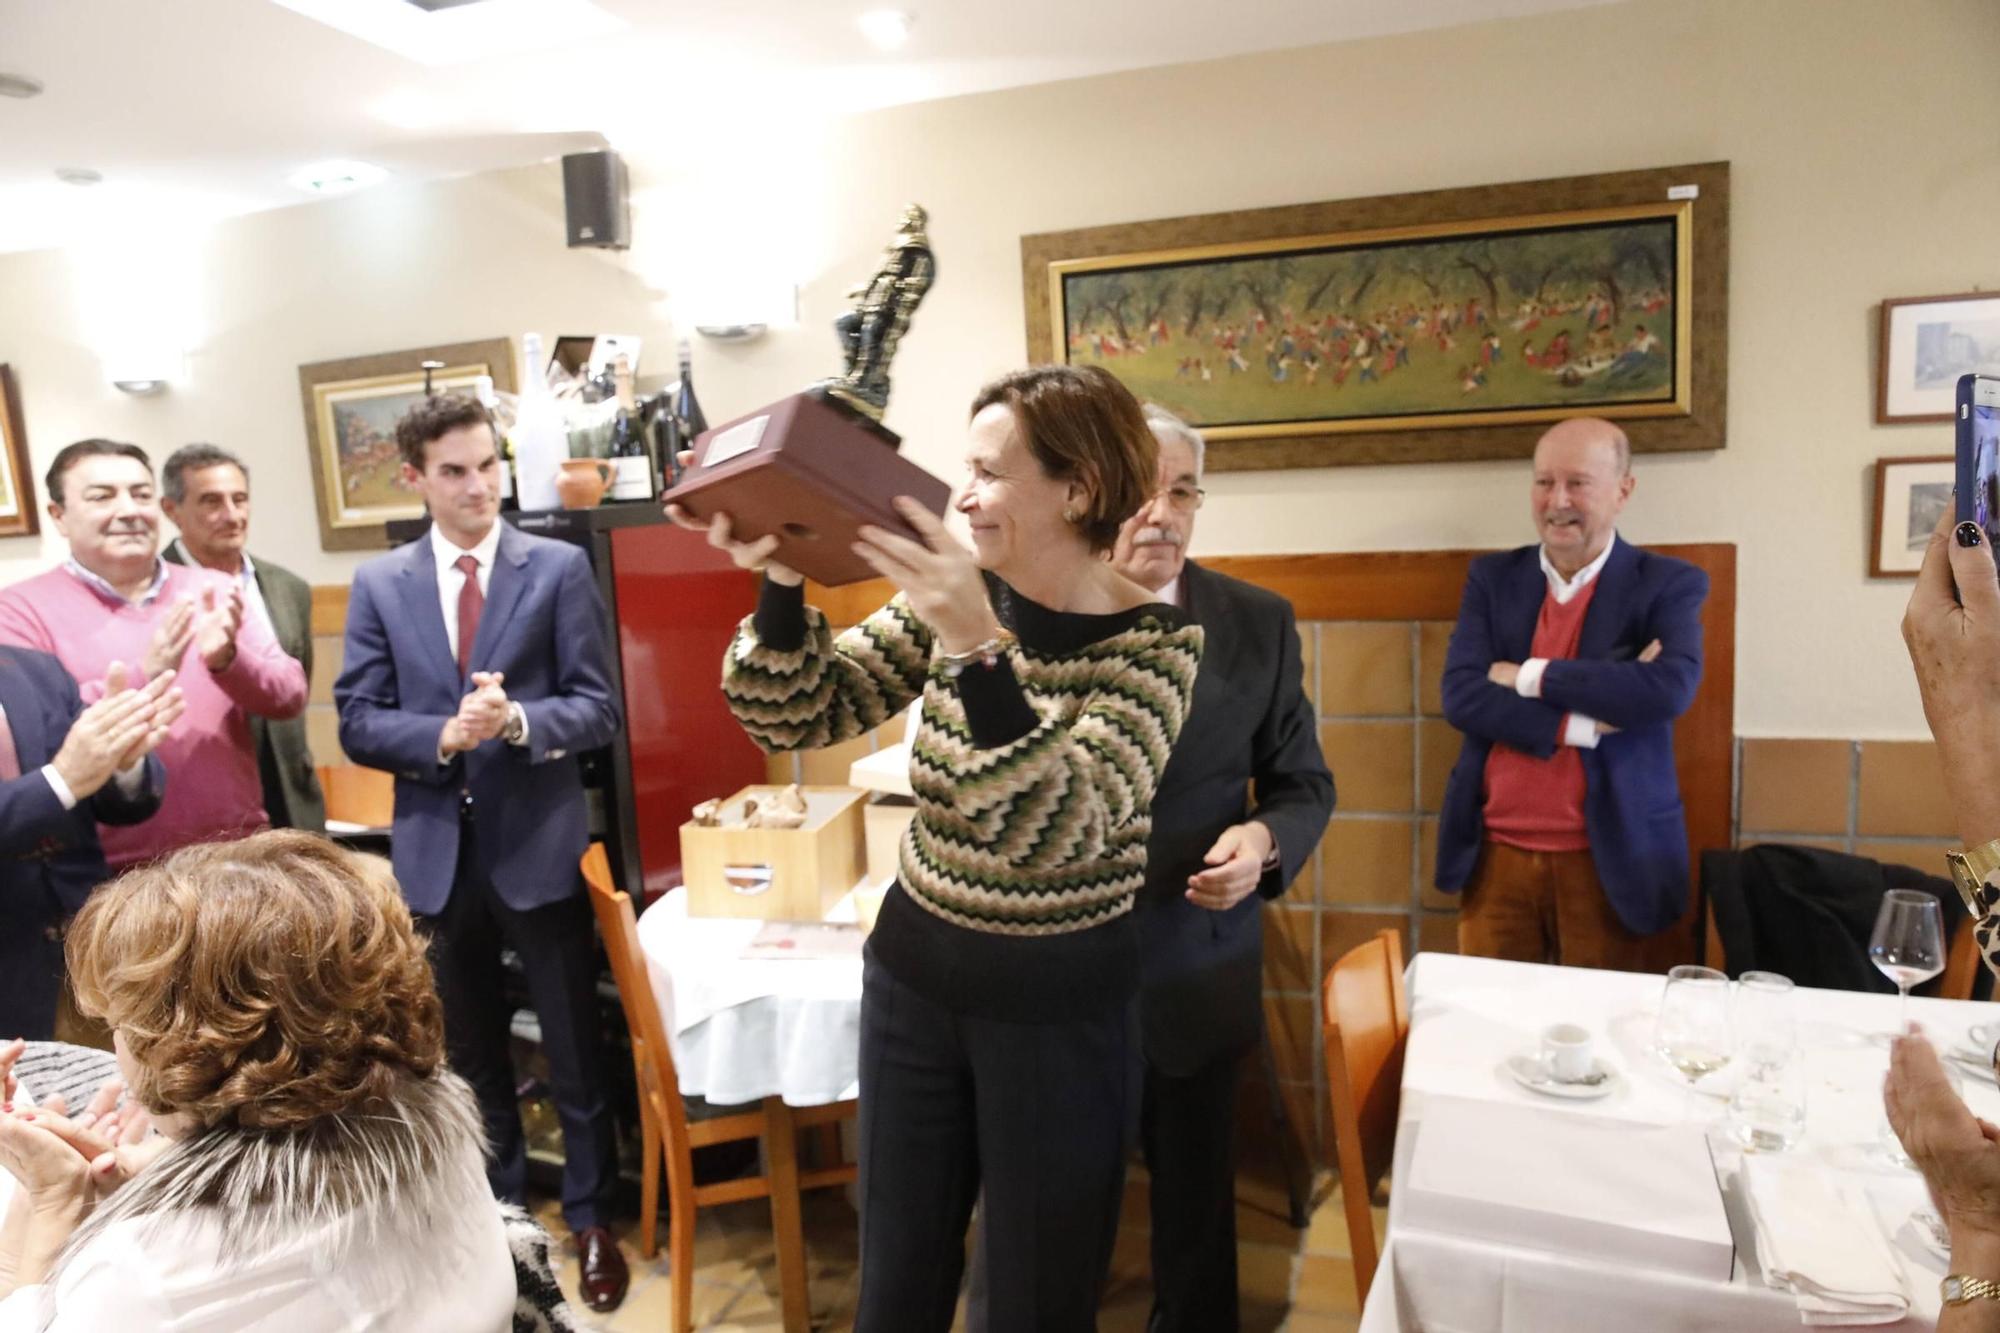 La entrega de premios de la Peña taurina Astur, en imágenes